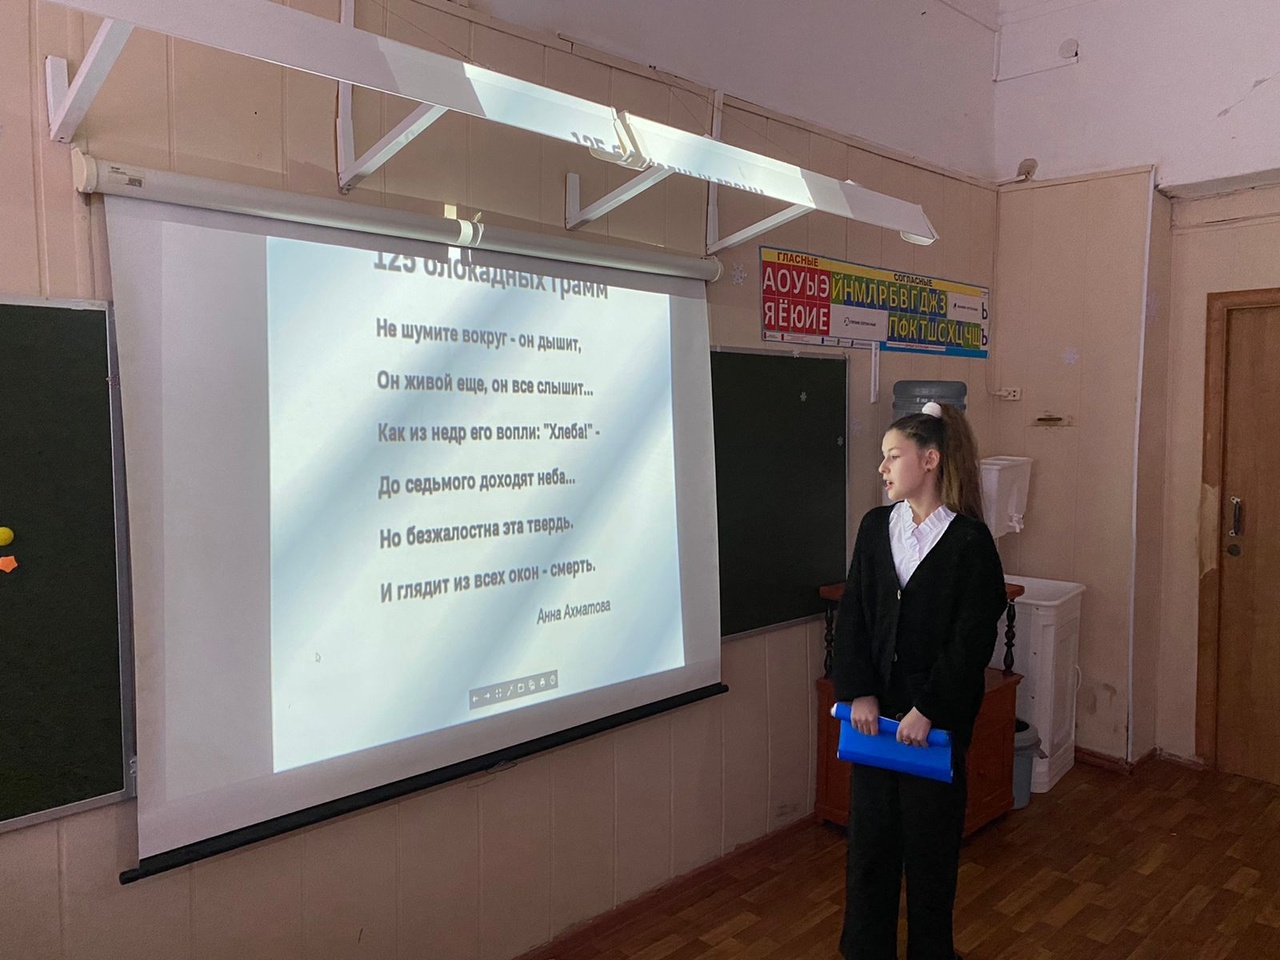 26 и 27 января учащиеся 5-го класса выступили перед ребятам из начальной школы и ученикам 6-х классов с рассказом о Блокадном Ленинграде.